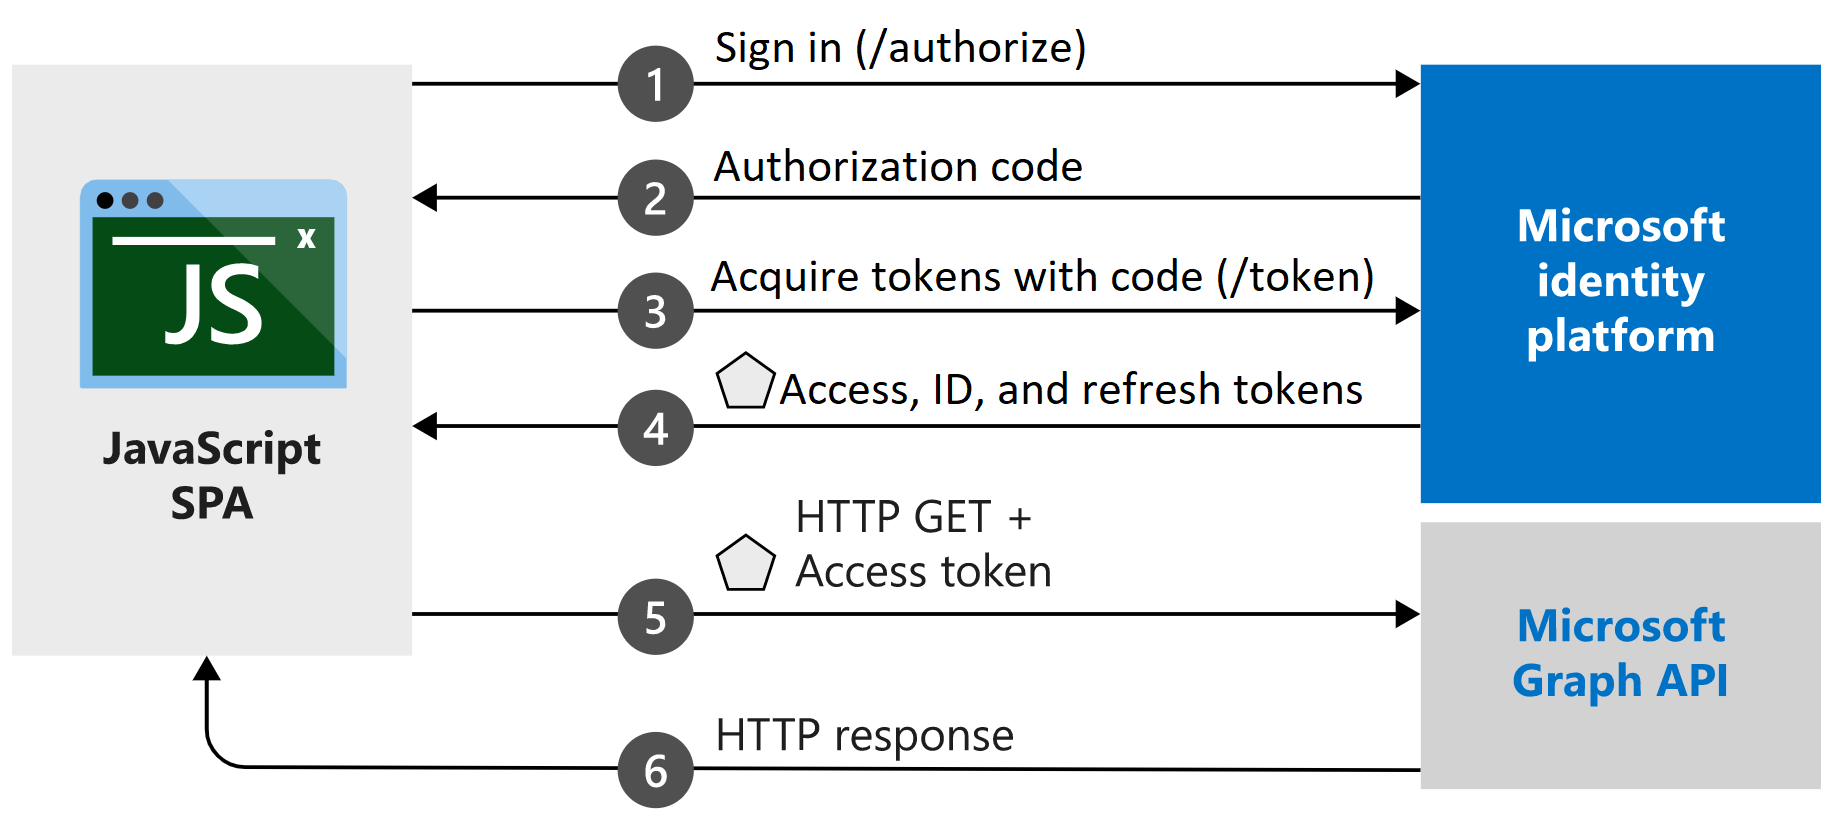 Diagrama mostrando o fluxo do código de autorização em um aplicativo de página única